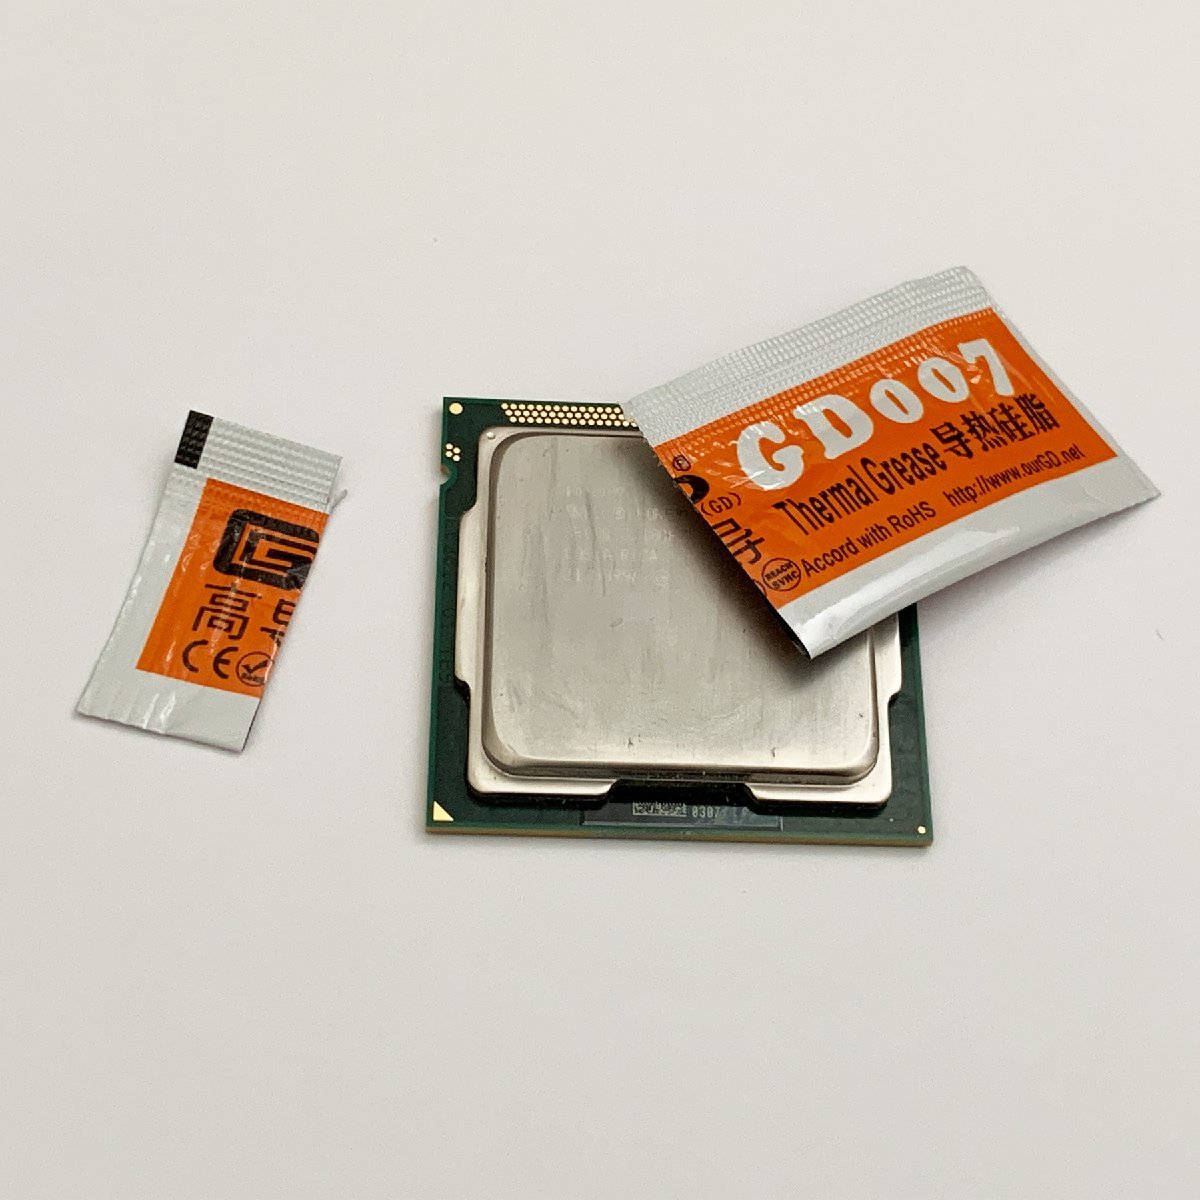 CPU смазка GD007 высокая эффективность изоляция . модель силикон теплоотвод используя порез . модель x 3 выпуск 